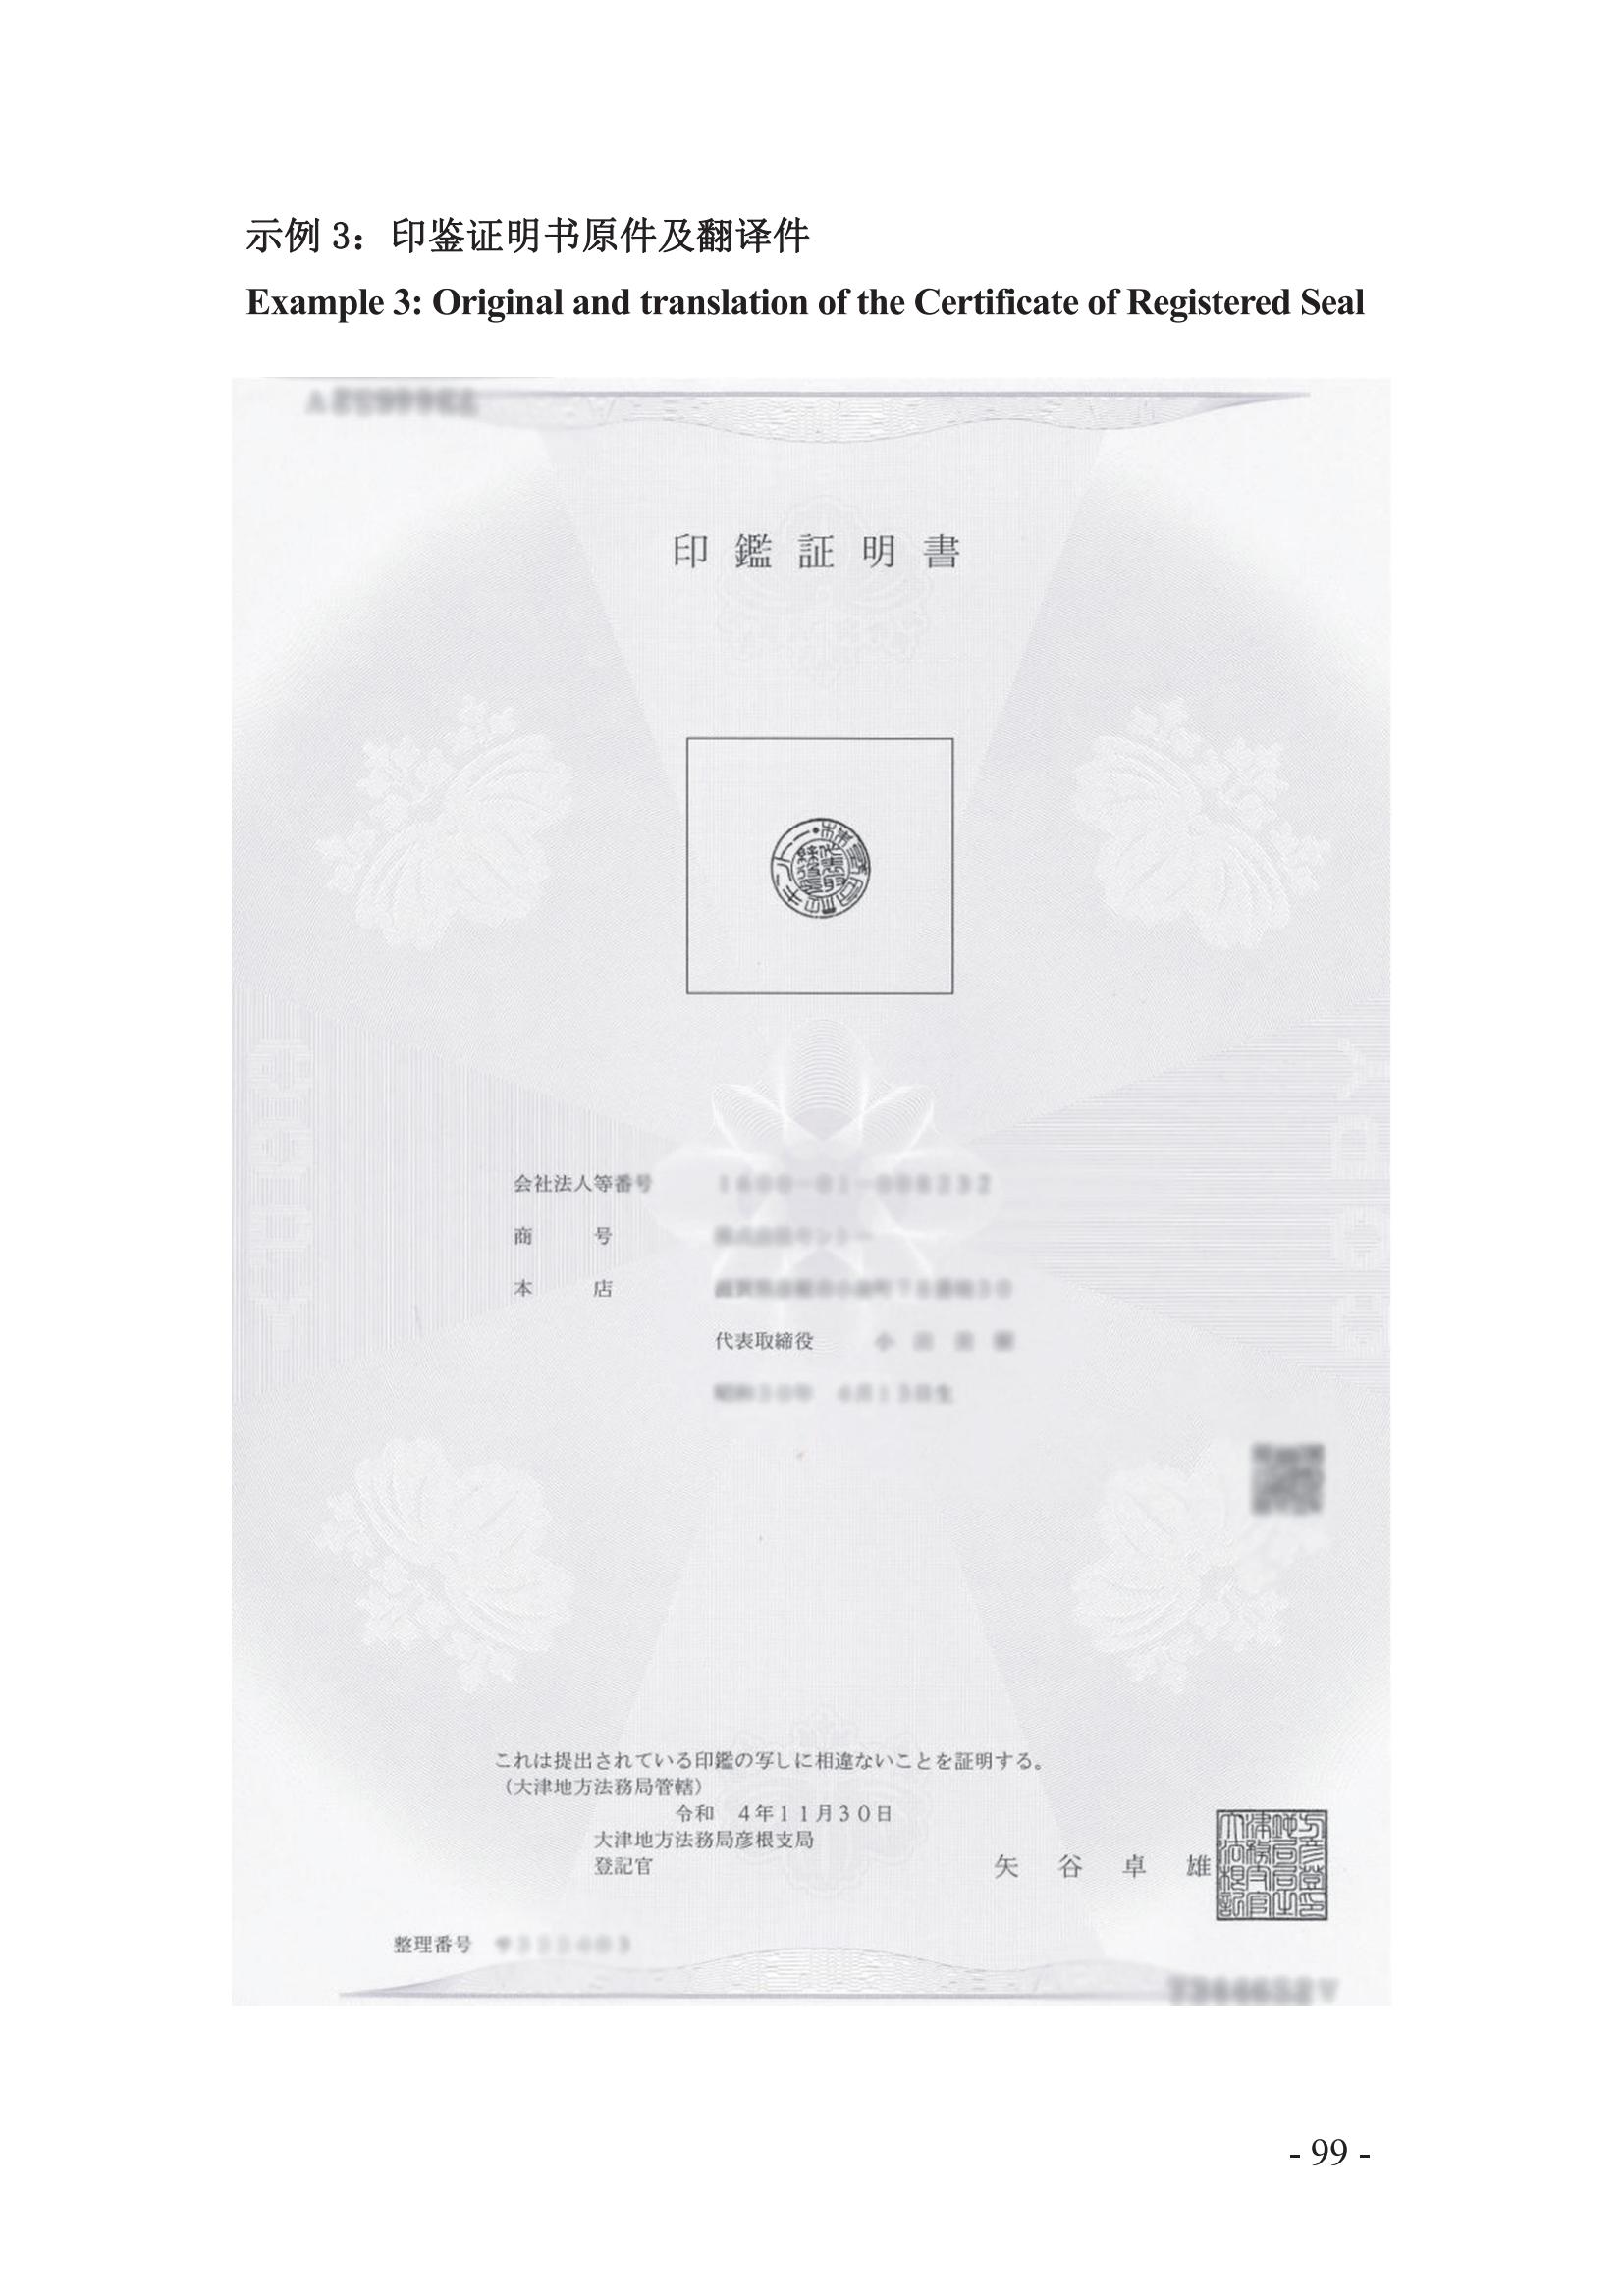 北京知识产权法院发布《涉外案件主体资格证明文件办理参考》